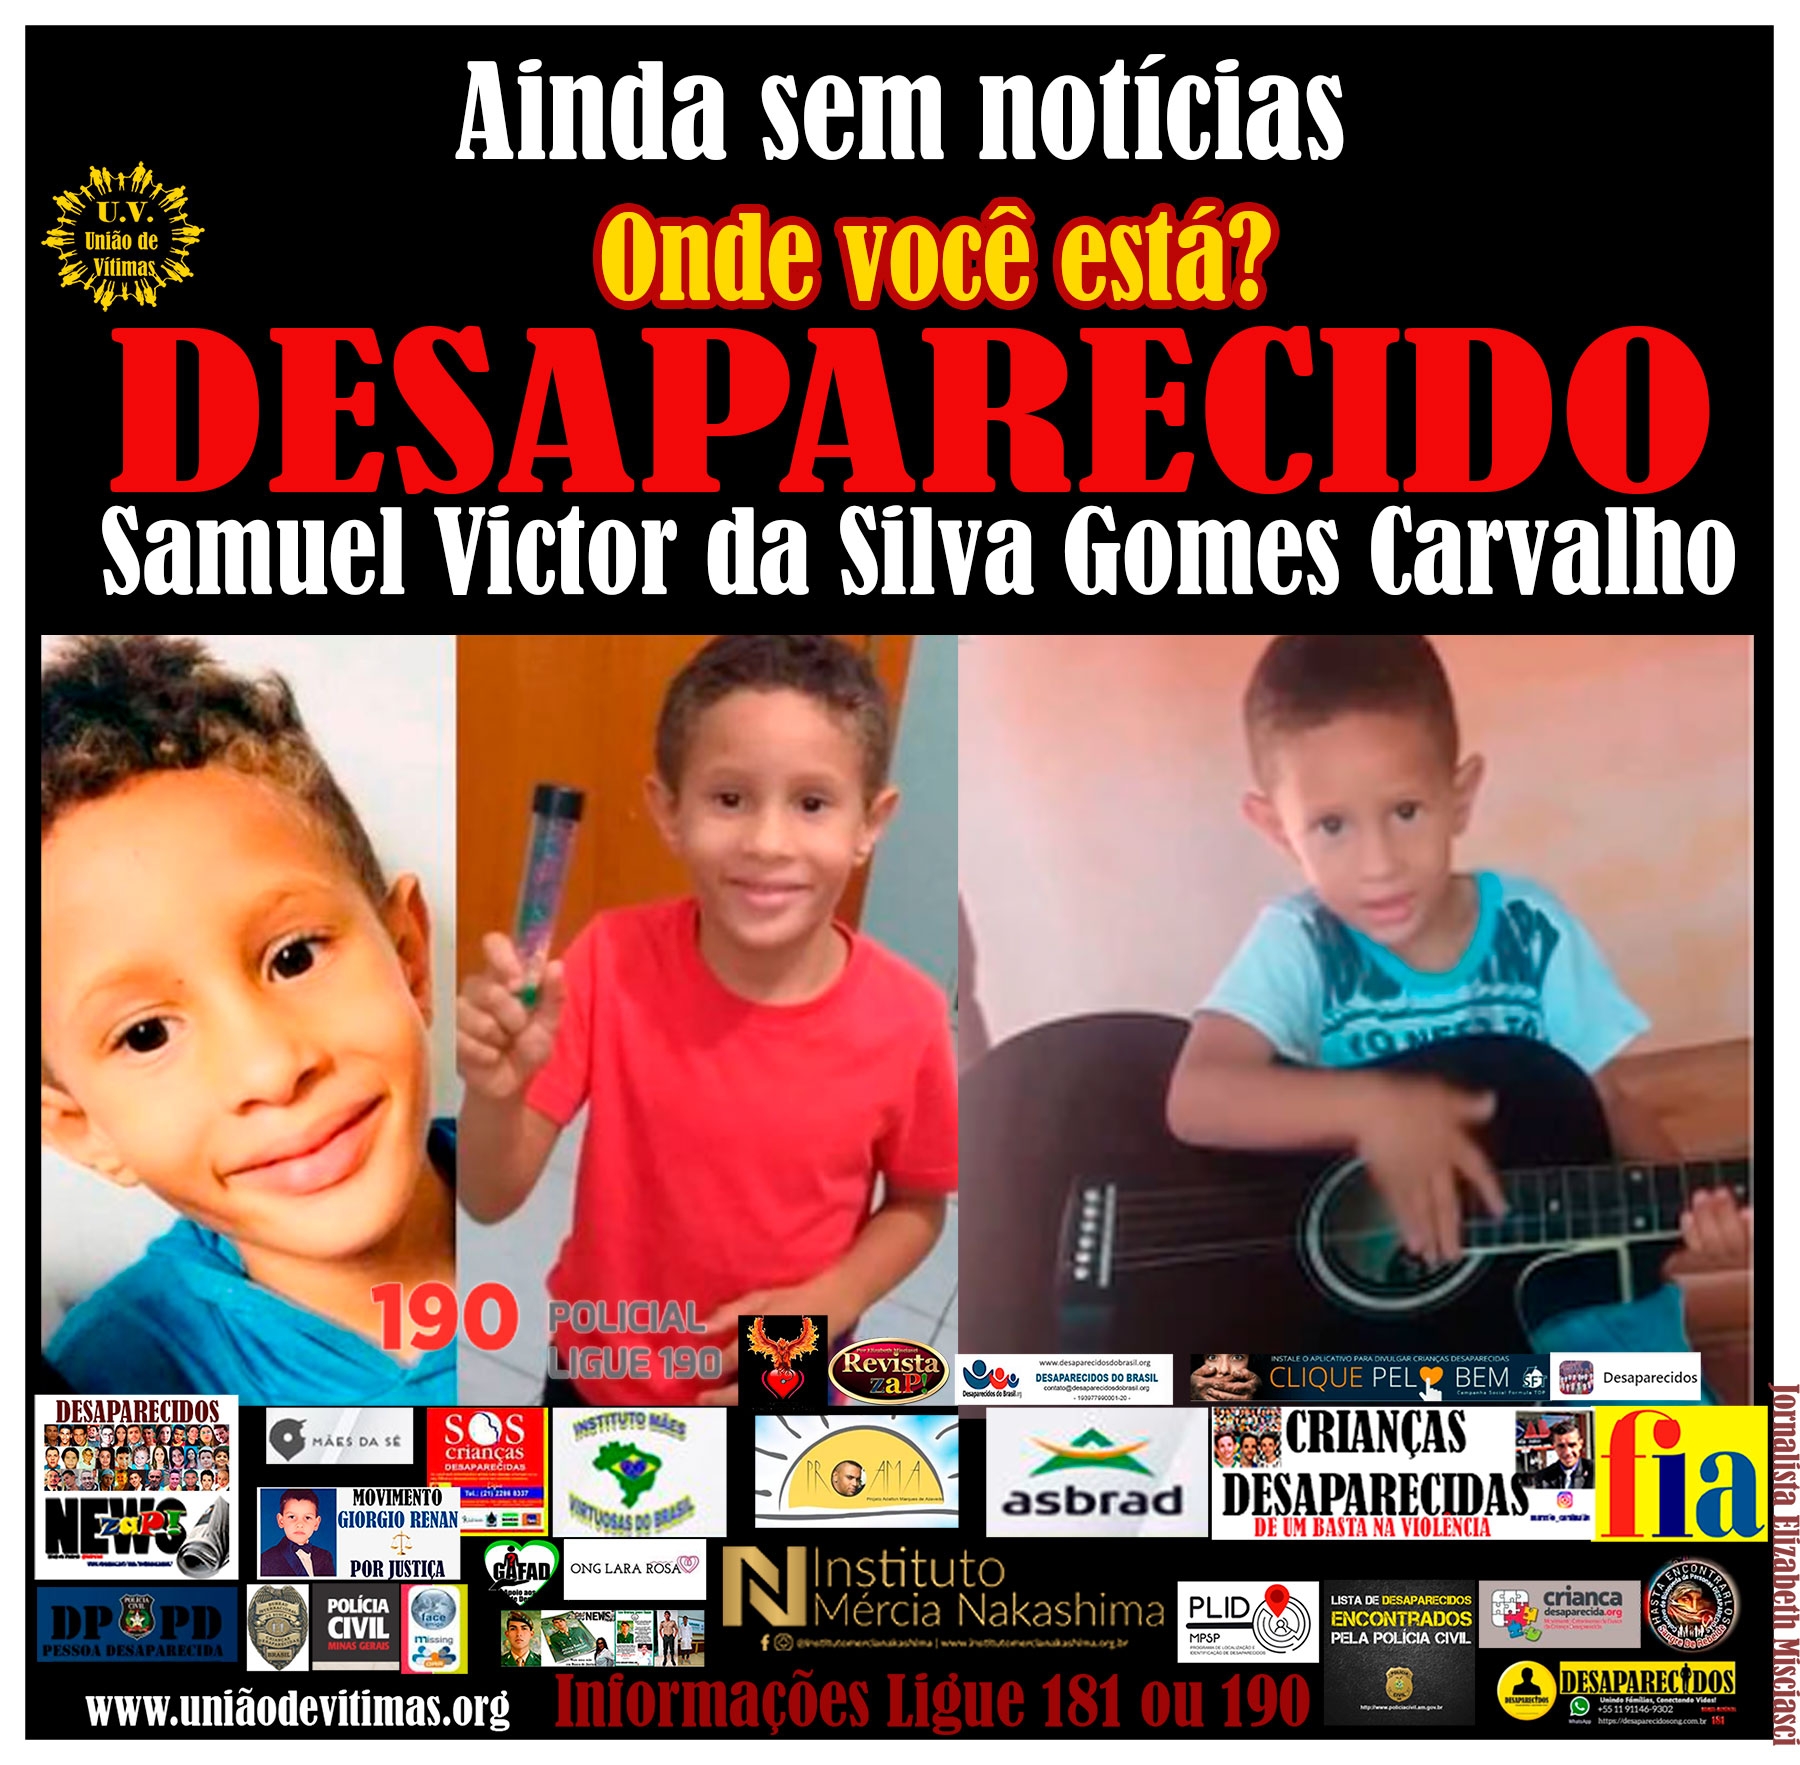 Samuel Victor da Silva Gomes Carvalho.